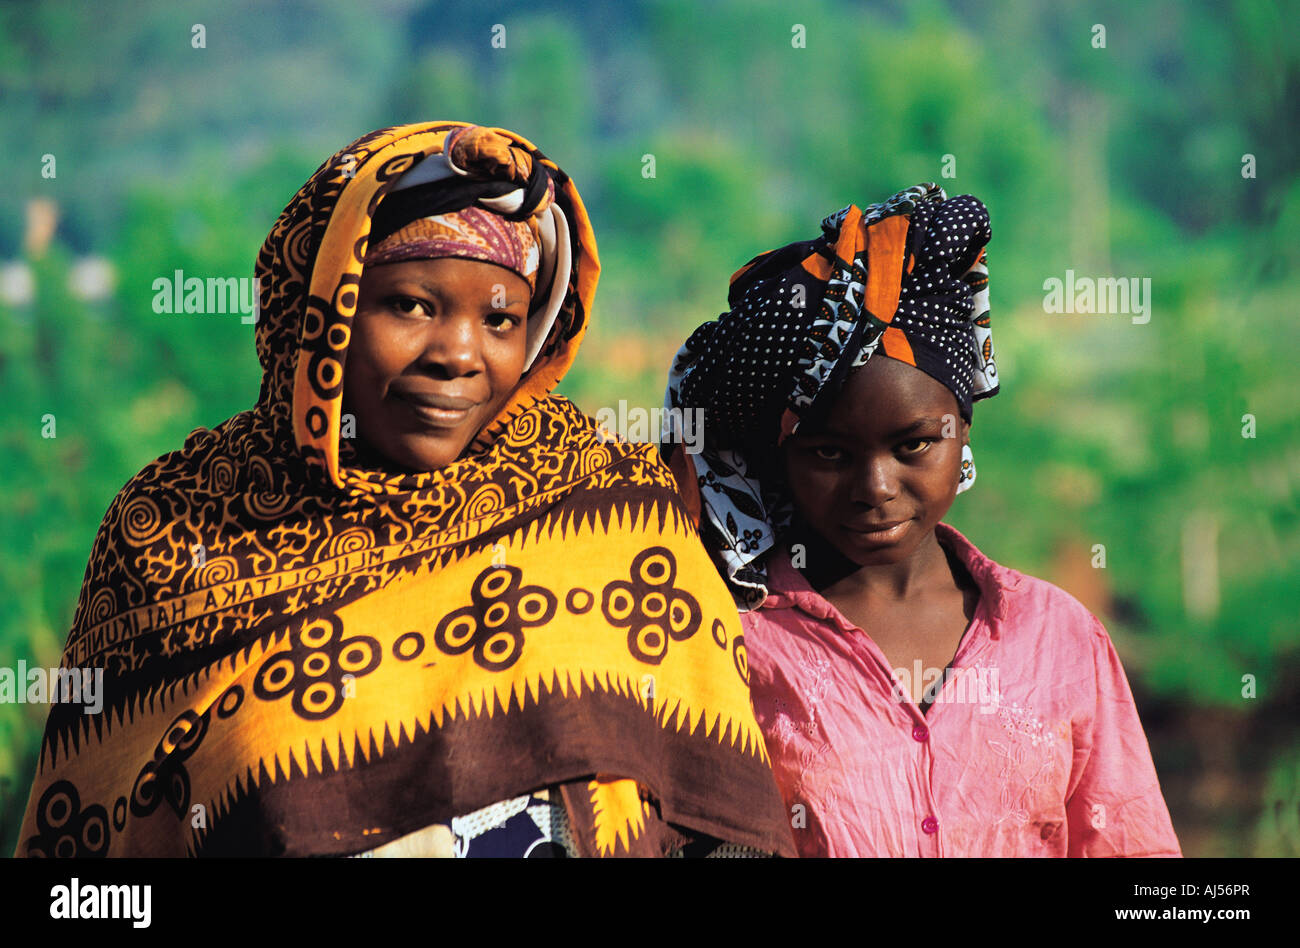 L'Afrique traditionnelle typique des femmes de la zone de forêt Usambara  haché principalement pour l'agriculture de l'Afrique de l'Est Tanzanie  Photo Stock - Alamy